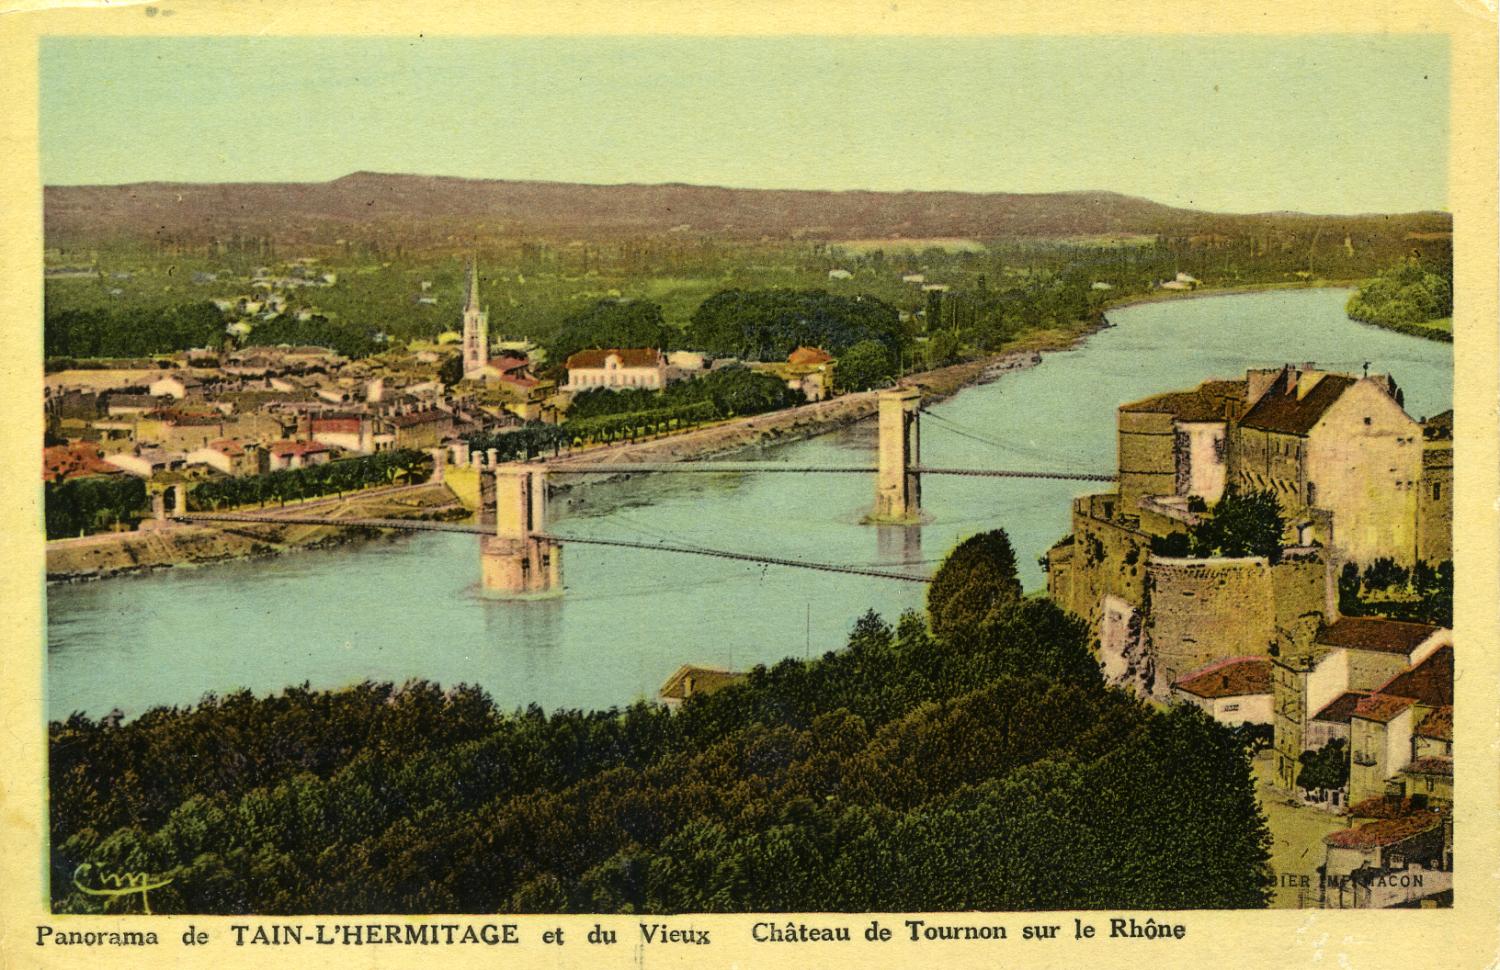 Panorama de Tain-L'Hermitage et du vieux Château de Tournon sur le Rhône